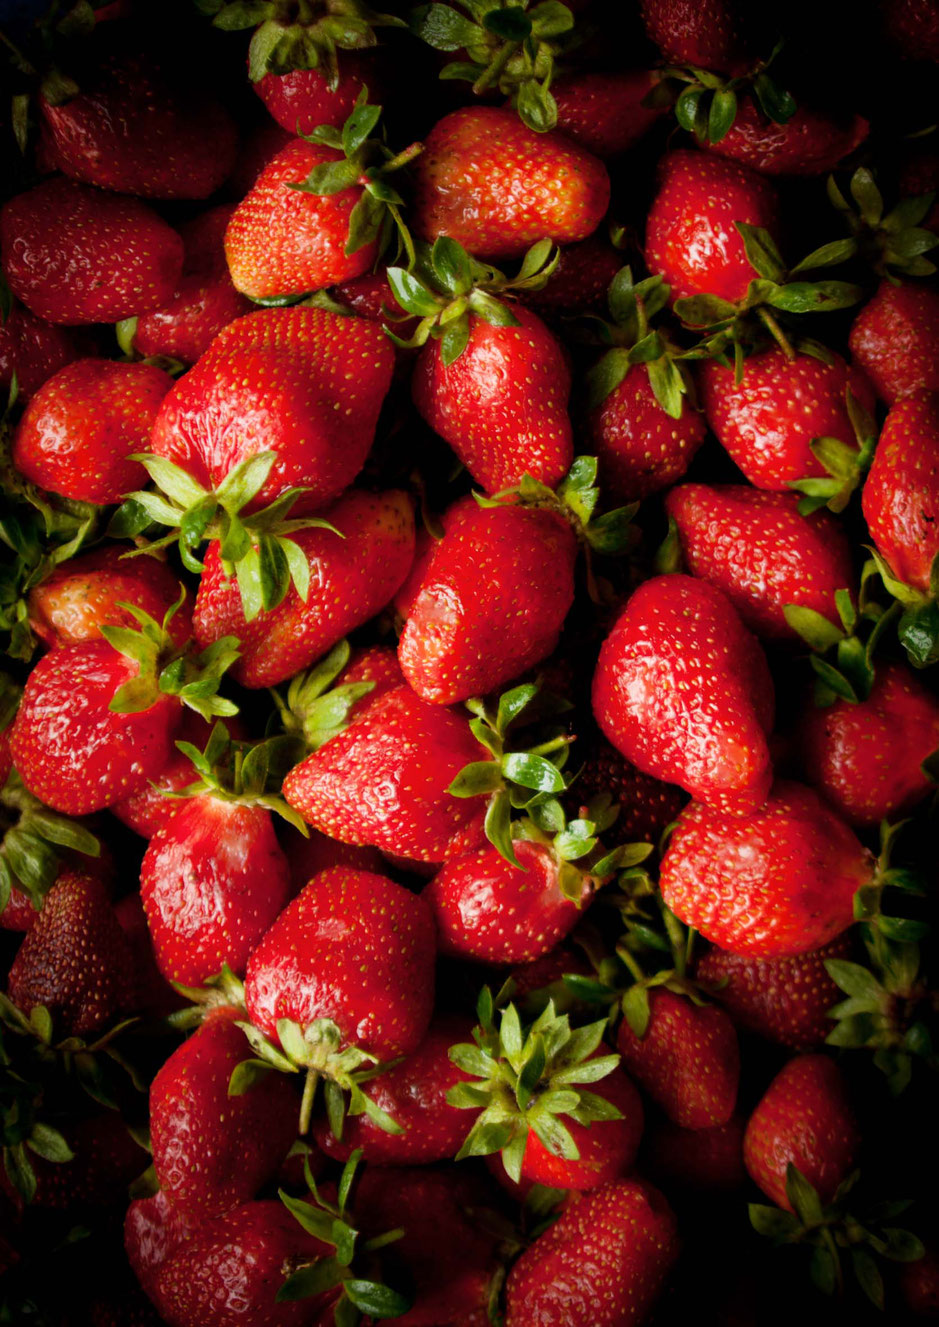 Erdbeer, Erdbeeren, Tarte, Basilikum, Backen, Kräuter, Sommer, Frühling, Creme, fruchtig, frisch, Zitrone, Dessert, Kuchen, Curd